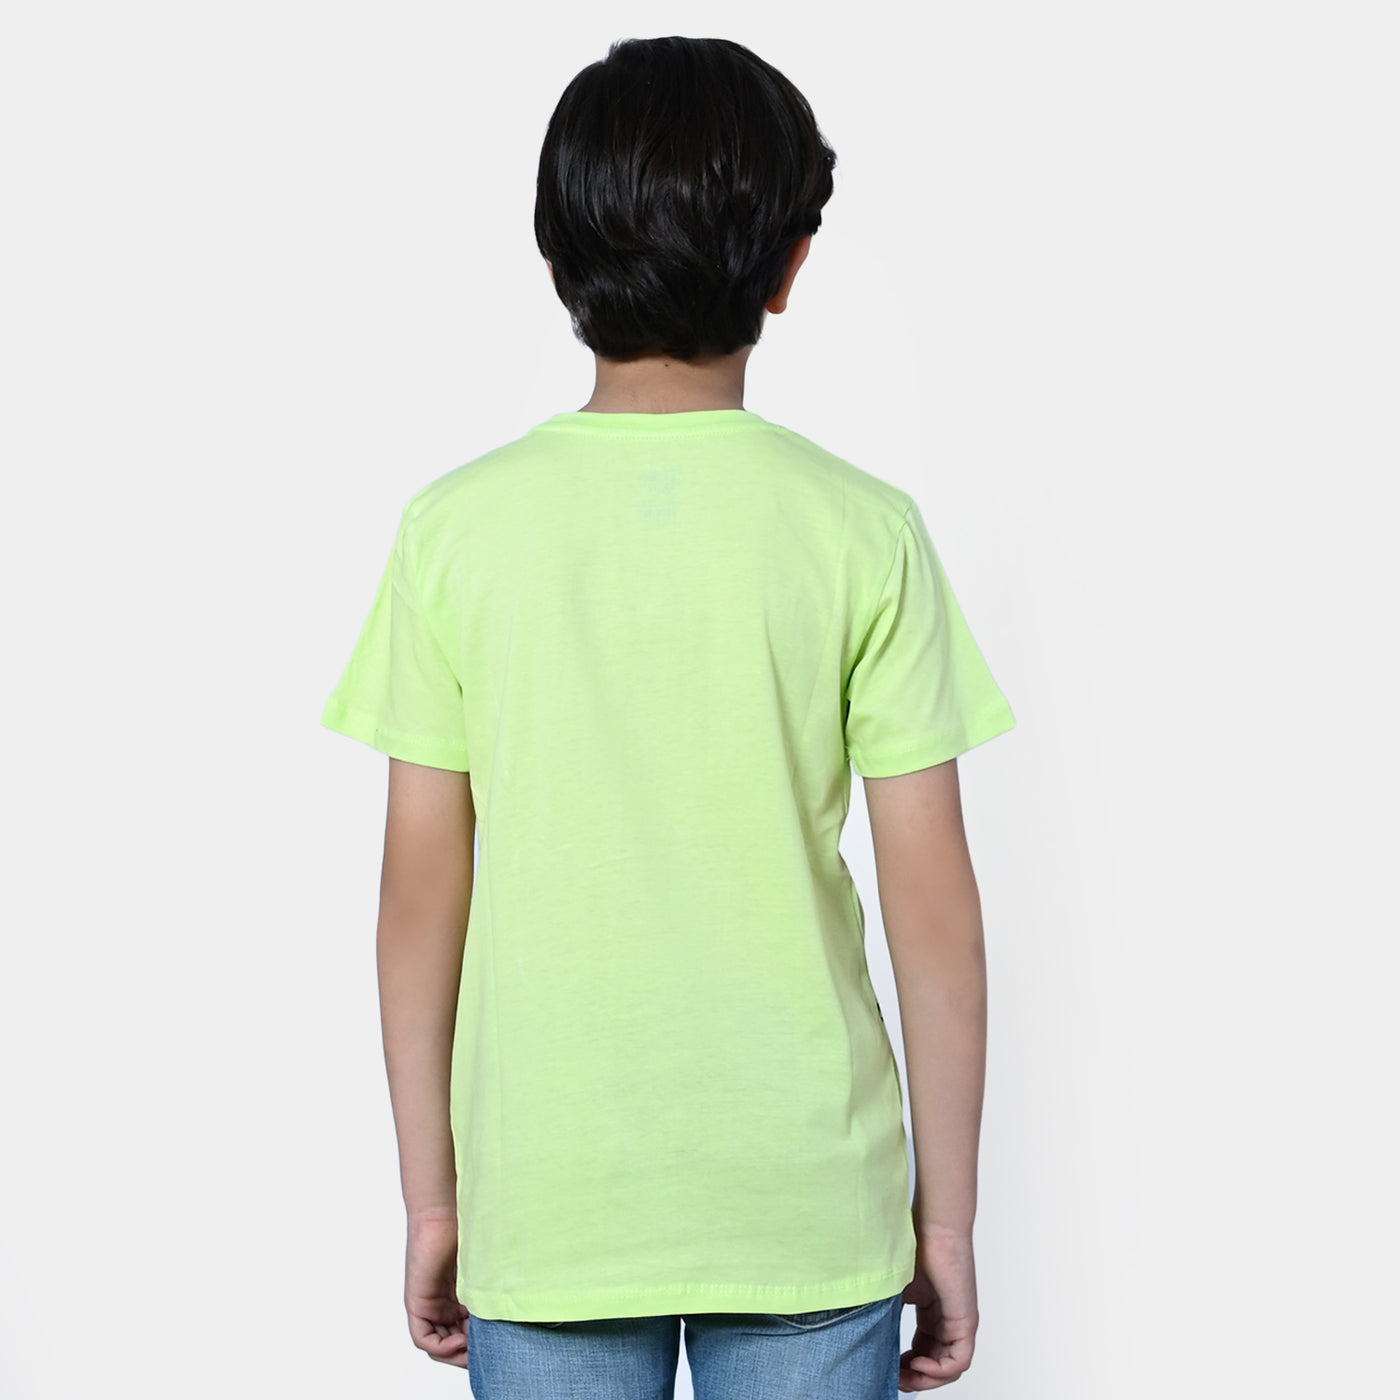 Boys Cotton T-Shirt New Goals |Sharp Green